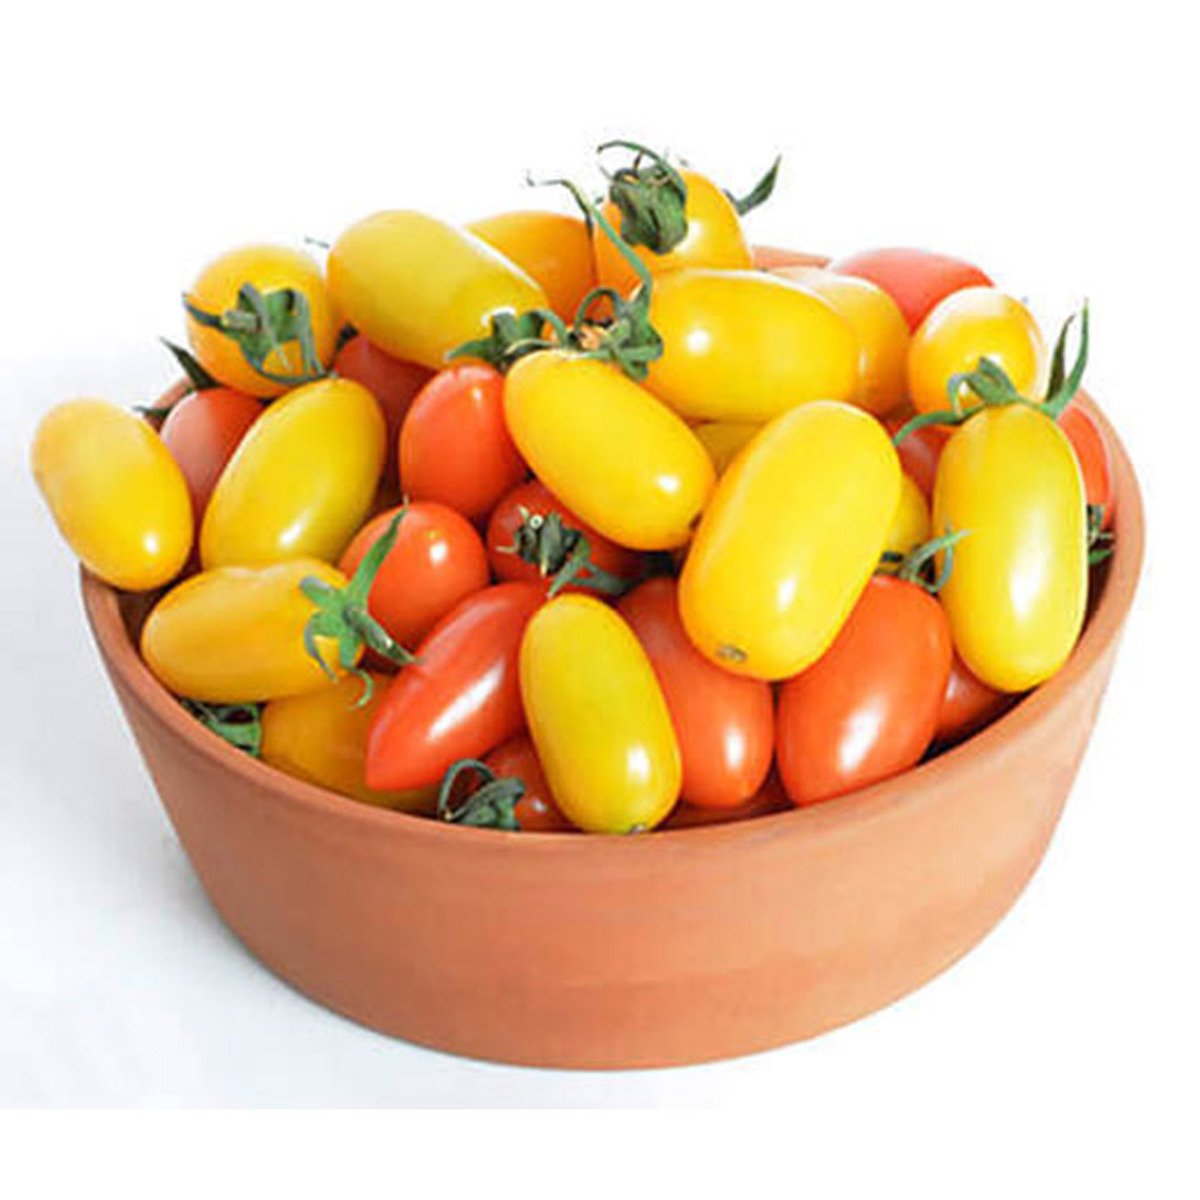 اشتري قم بشراء طماطم الحلوى كرو سعودية حزمة واحدة Online at Best Price من الموقع - من لولو هايبر ماركت Tomatoes في السعودية